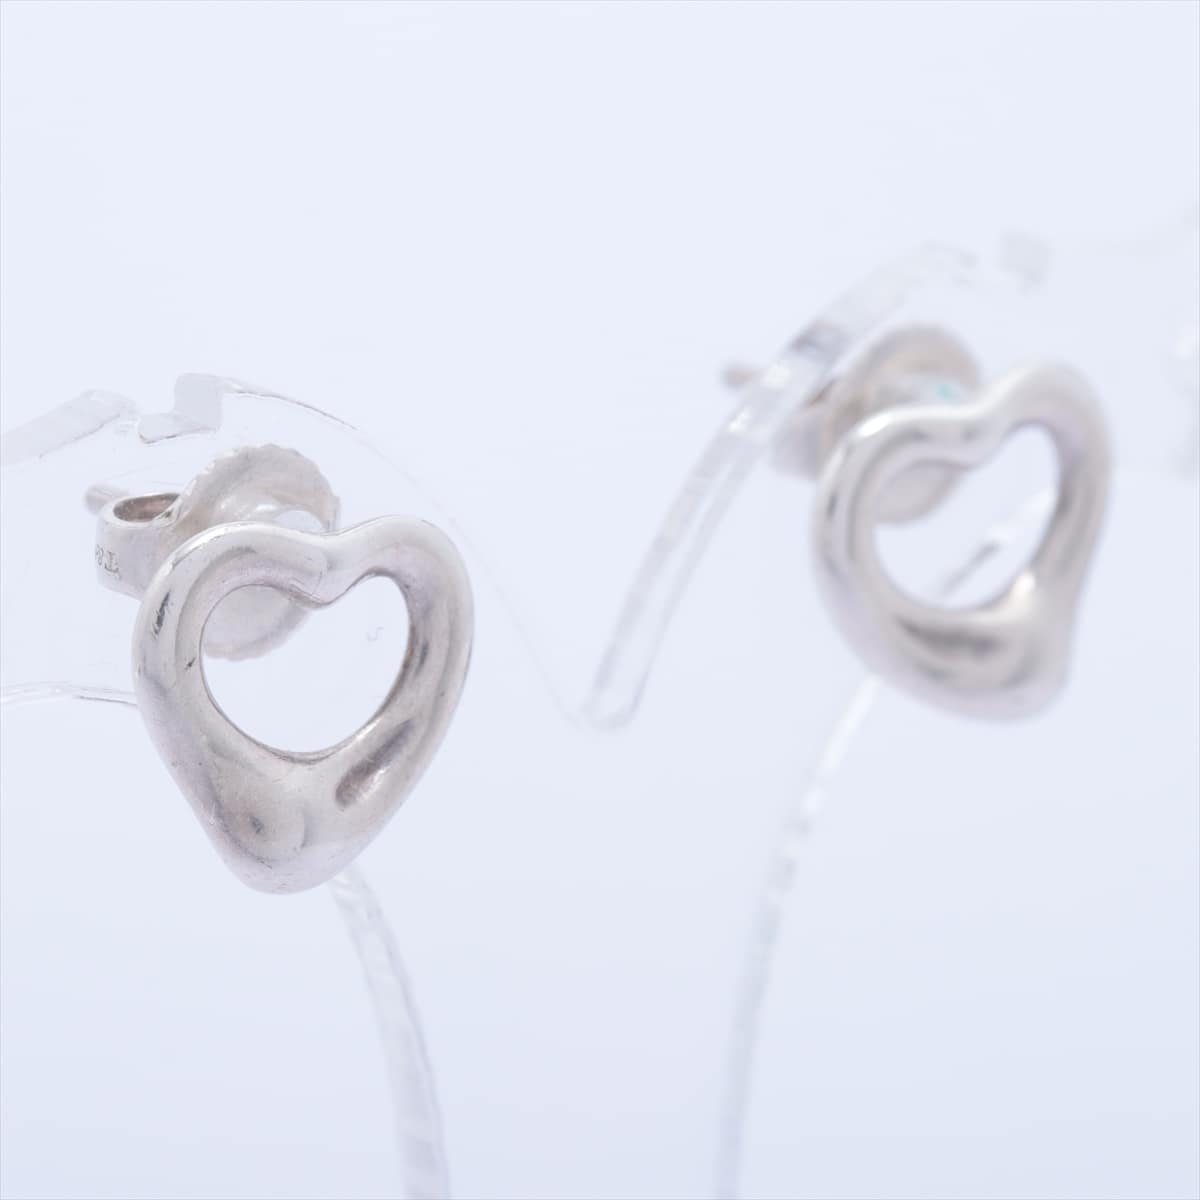 Tiffany Open Heart Piercing jewelry (for both ears) 925 Silver